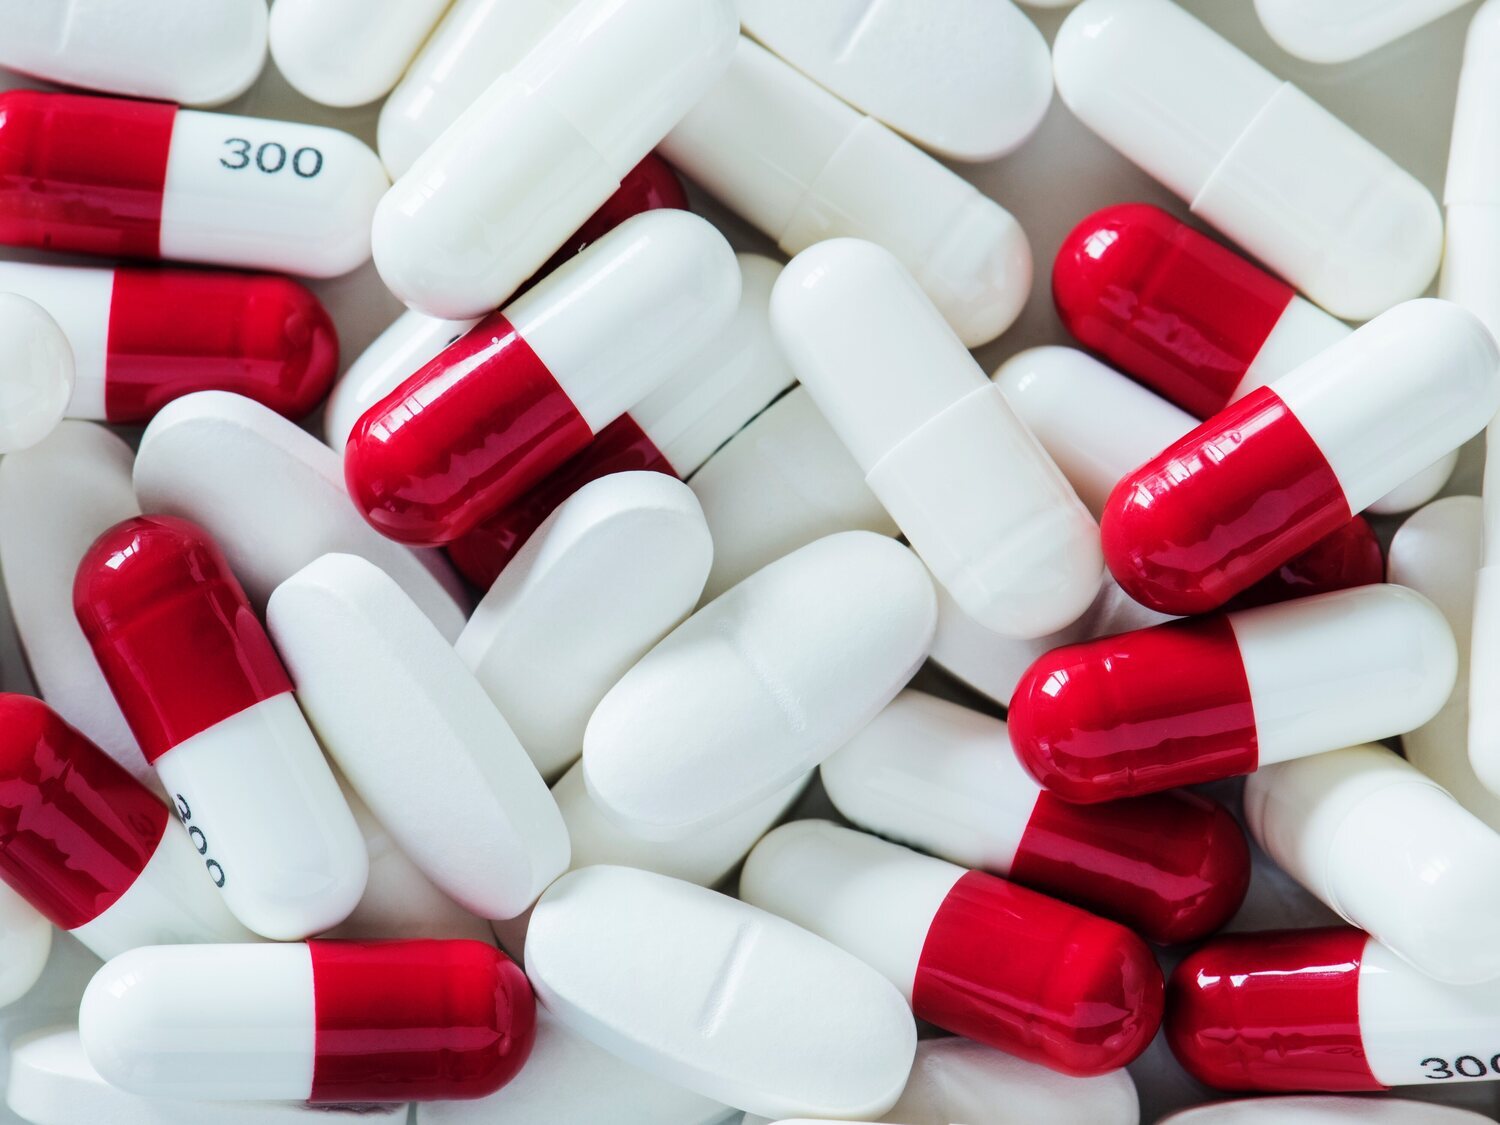 Alerta sanitaria: retiran de la venta estos populares medicamentos de todas las farmacias y piden evitar su consumo